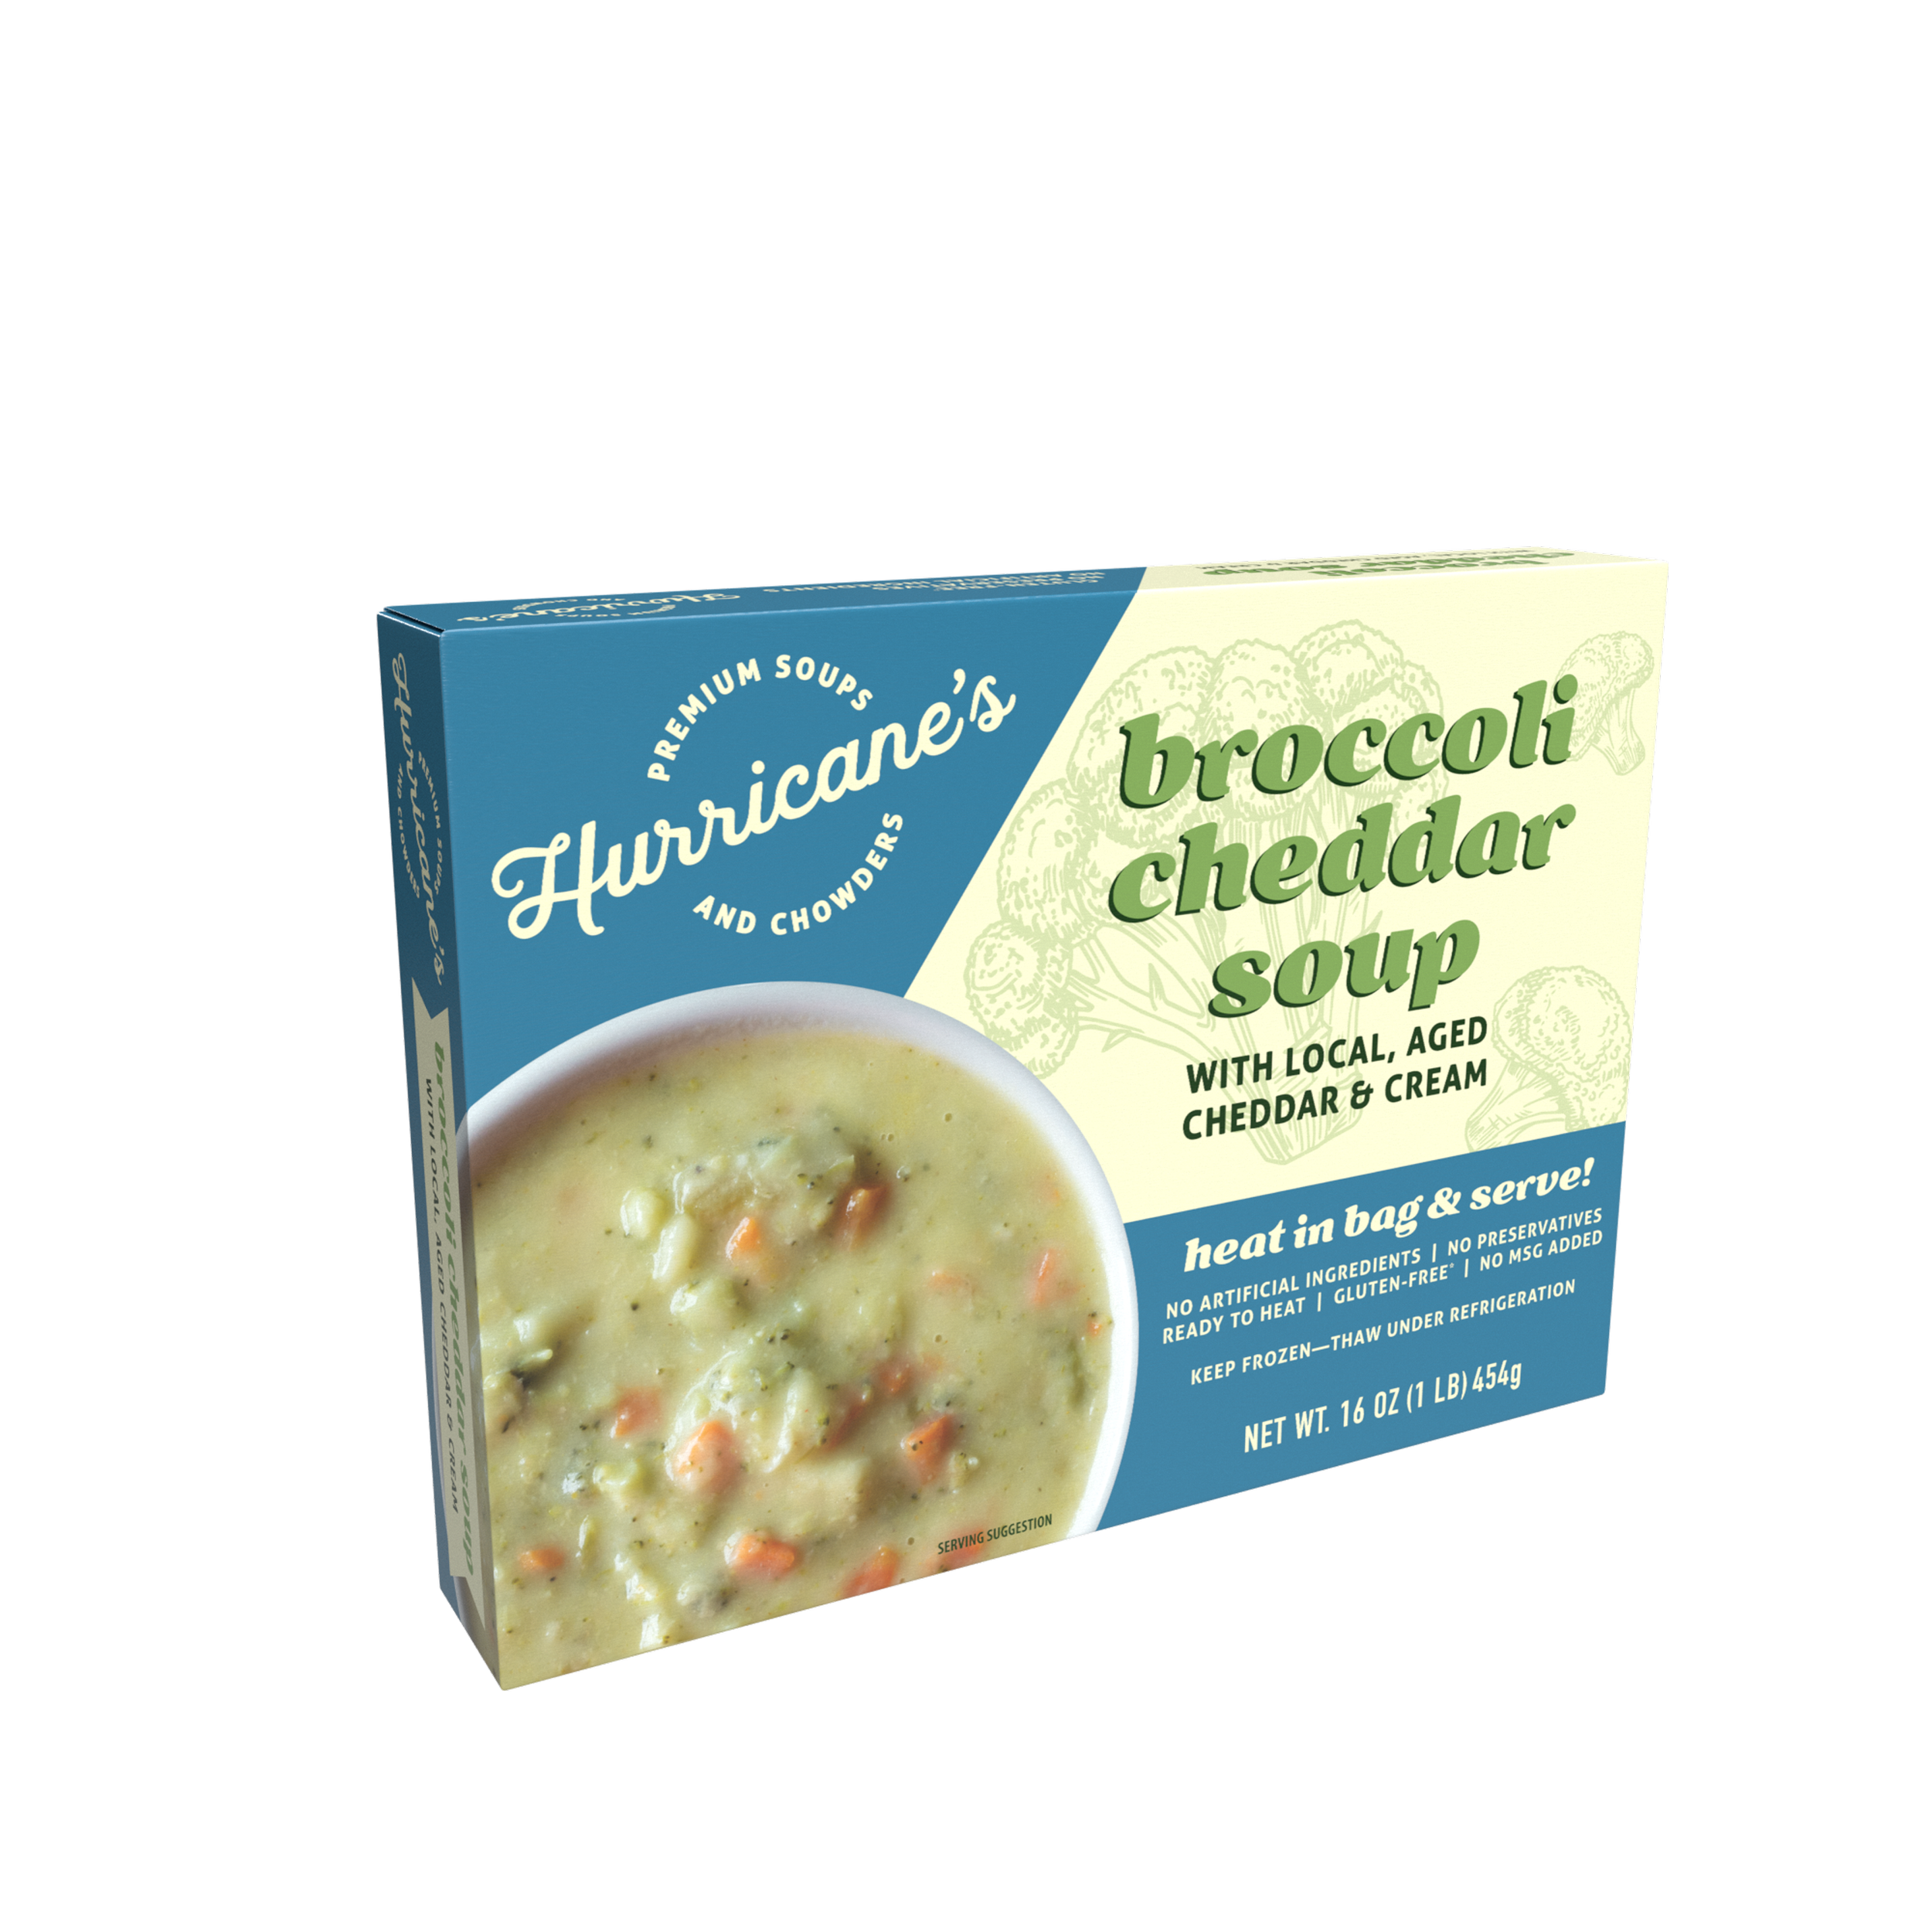 Broccoli Cheddar